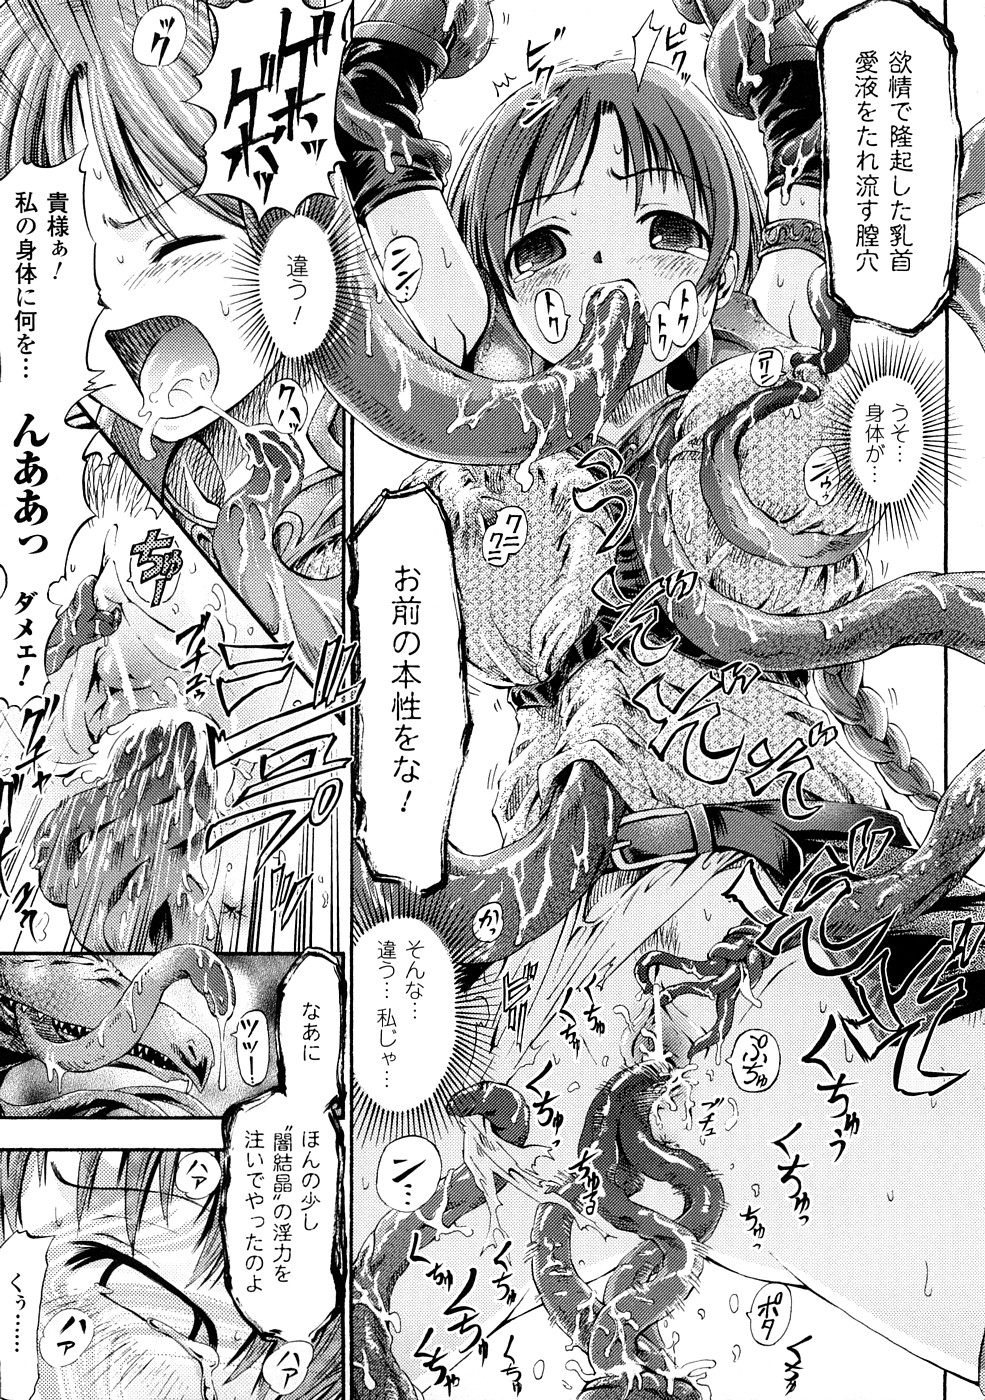 [Horitomo] Fairy Tales page 50 full